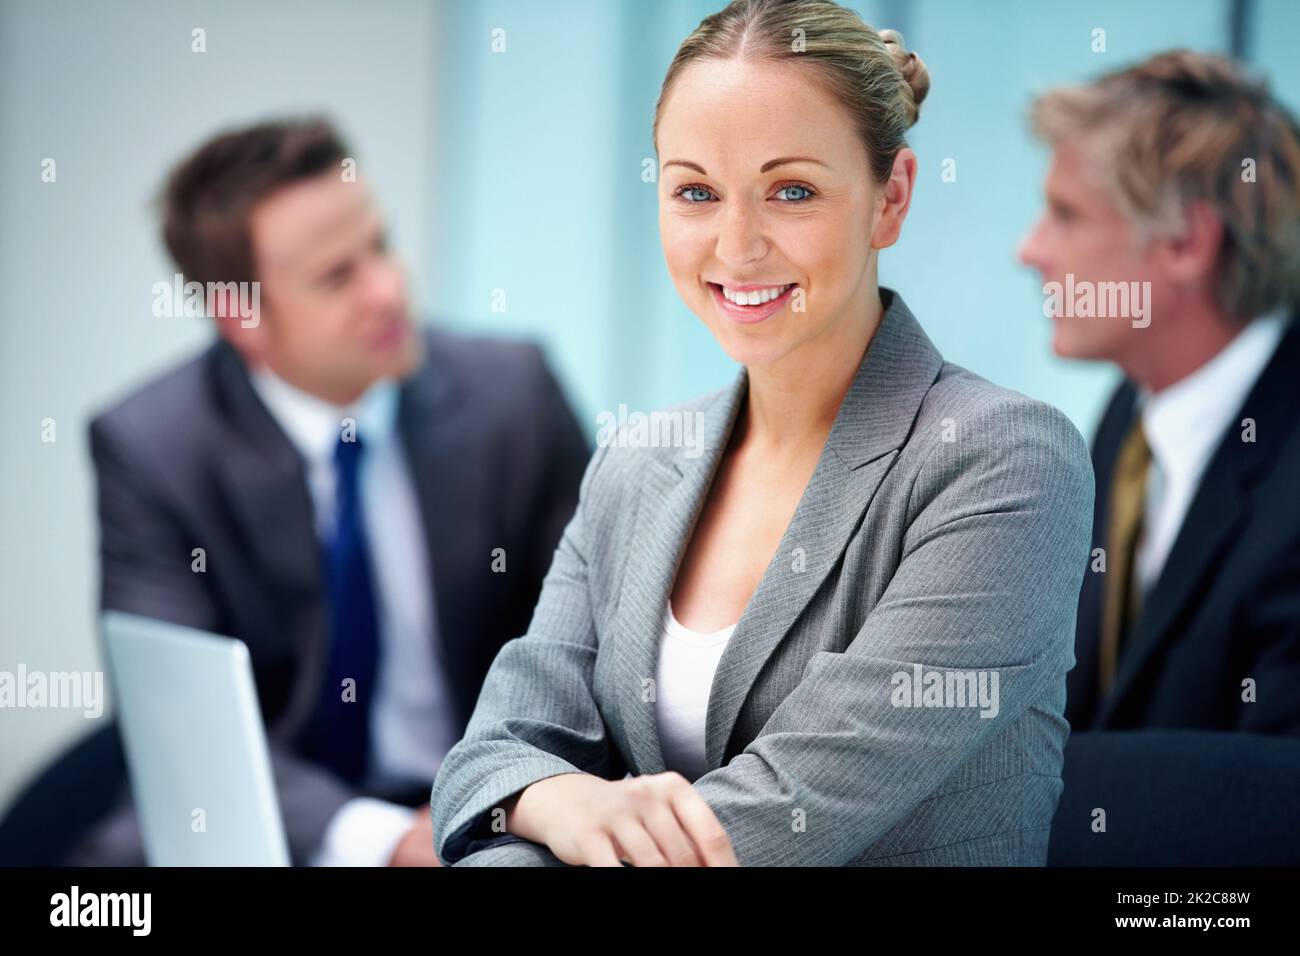 Sorridente dirigente con uomini d'affari. Ritratto di bel dirigente sorridente con uomini d'affari in background. Foto Stock